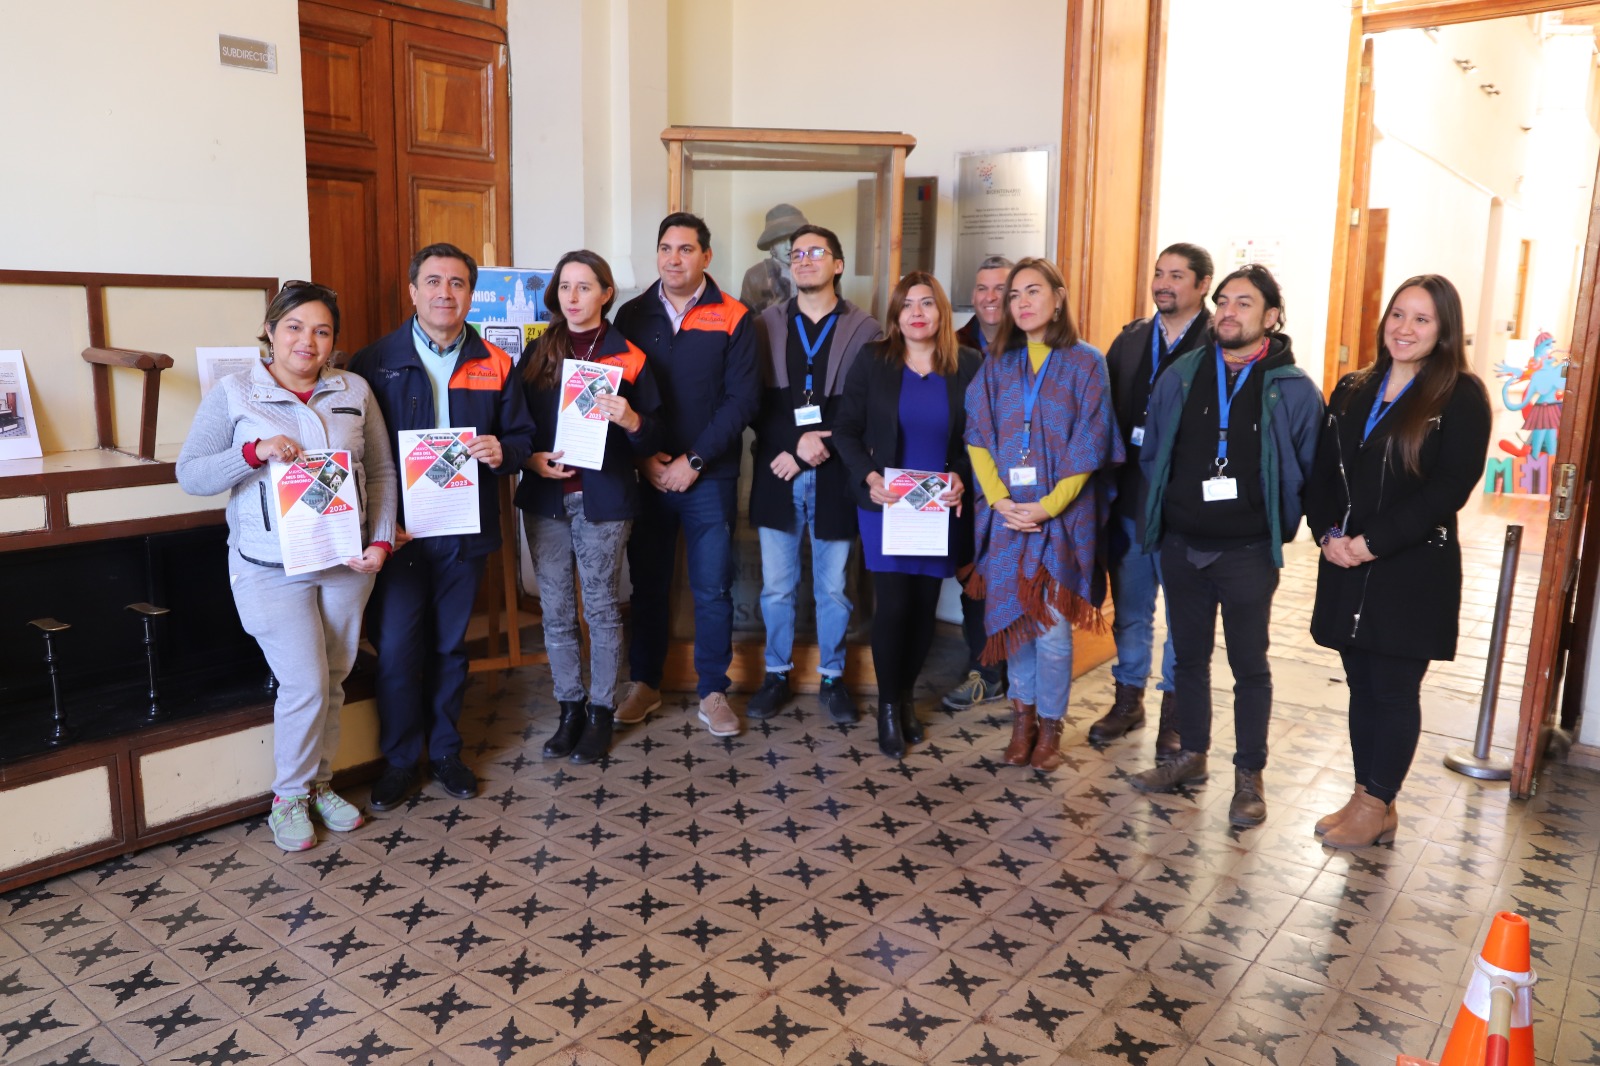 LOS ANDES: El patrimonio se valora en la comuna de Los Andes